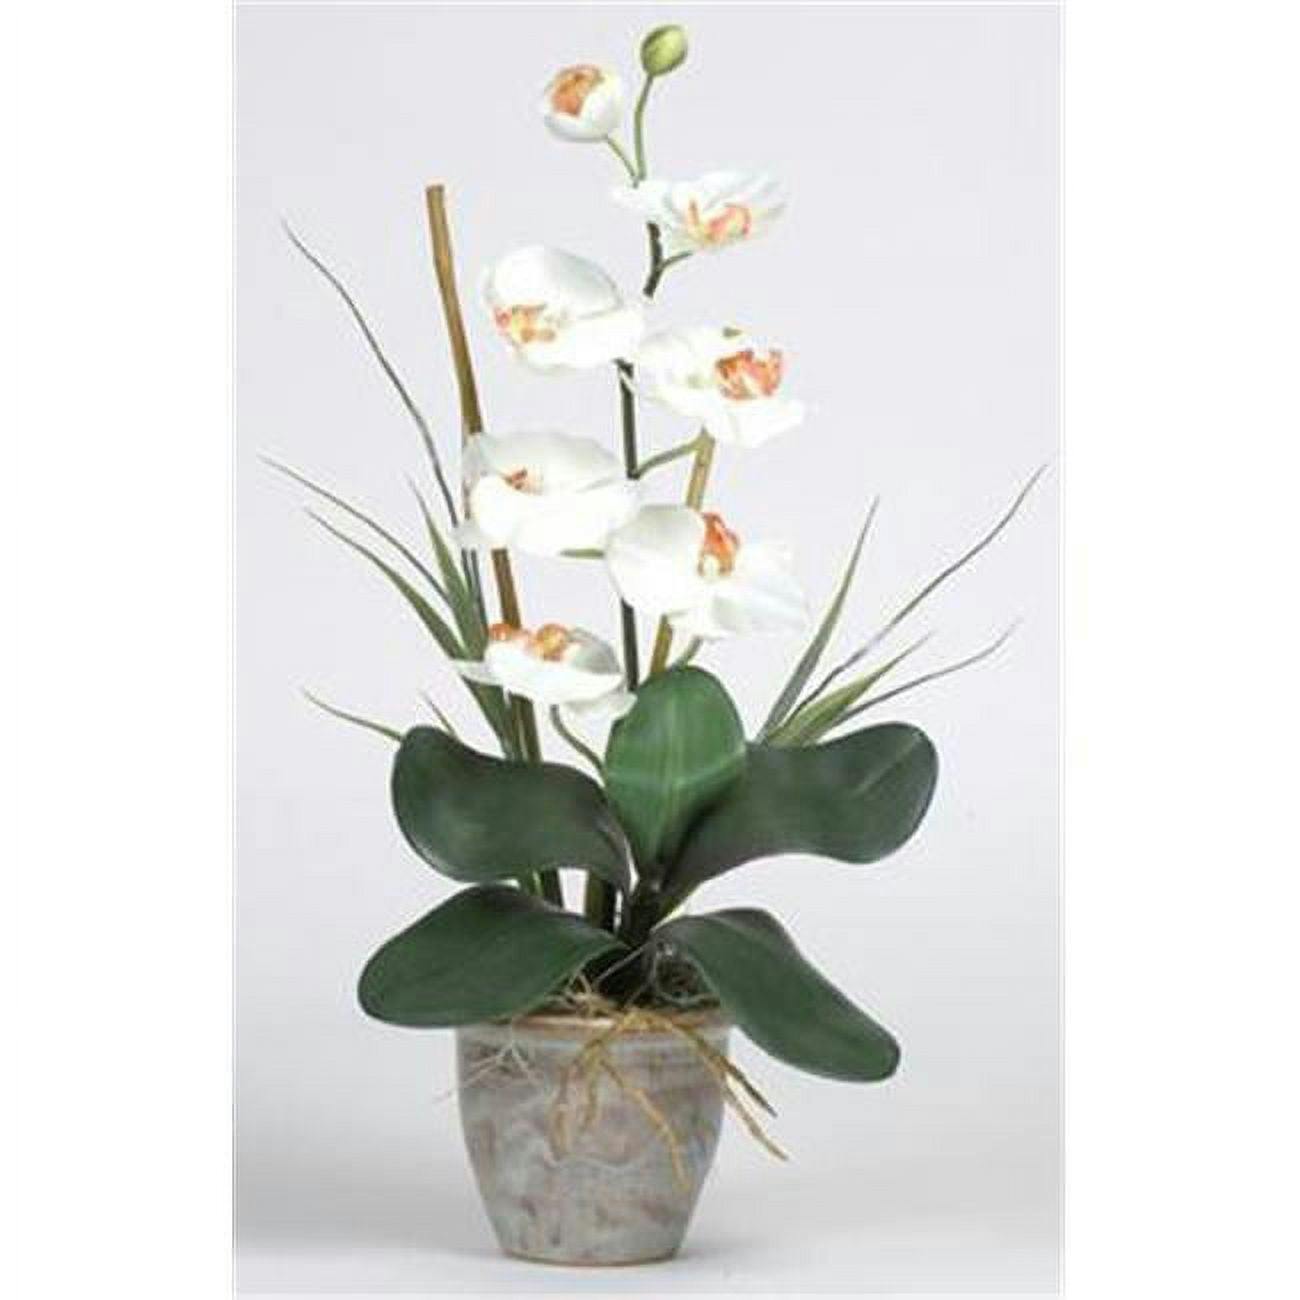 Elegant Orchid Cream Silk Tabletop Arrangement in Stylish Ceramic Pot